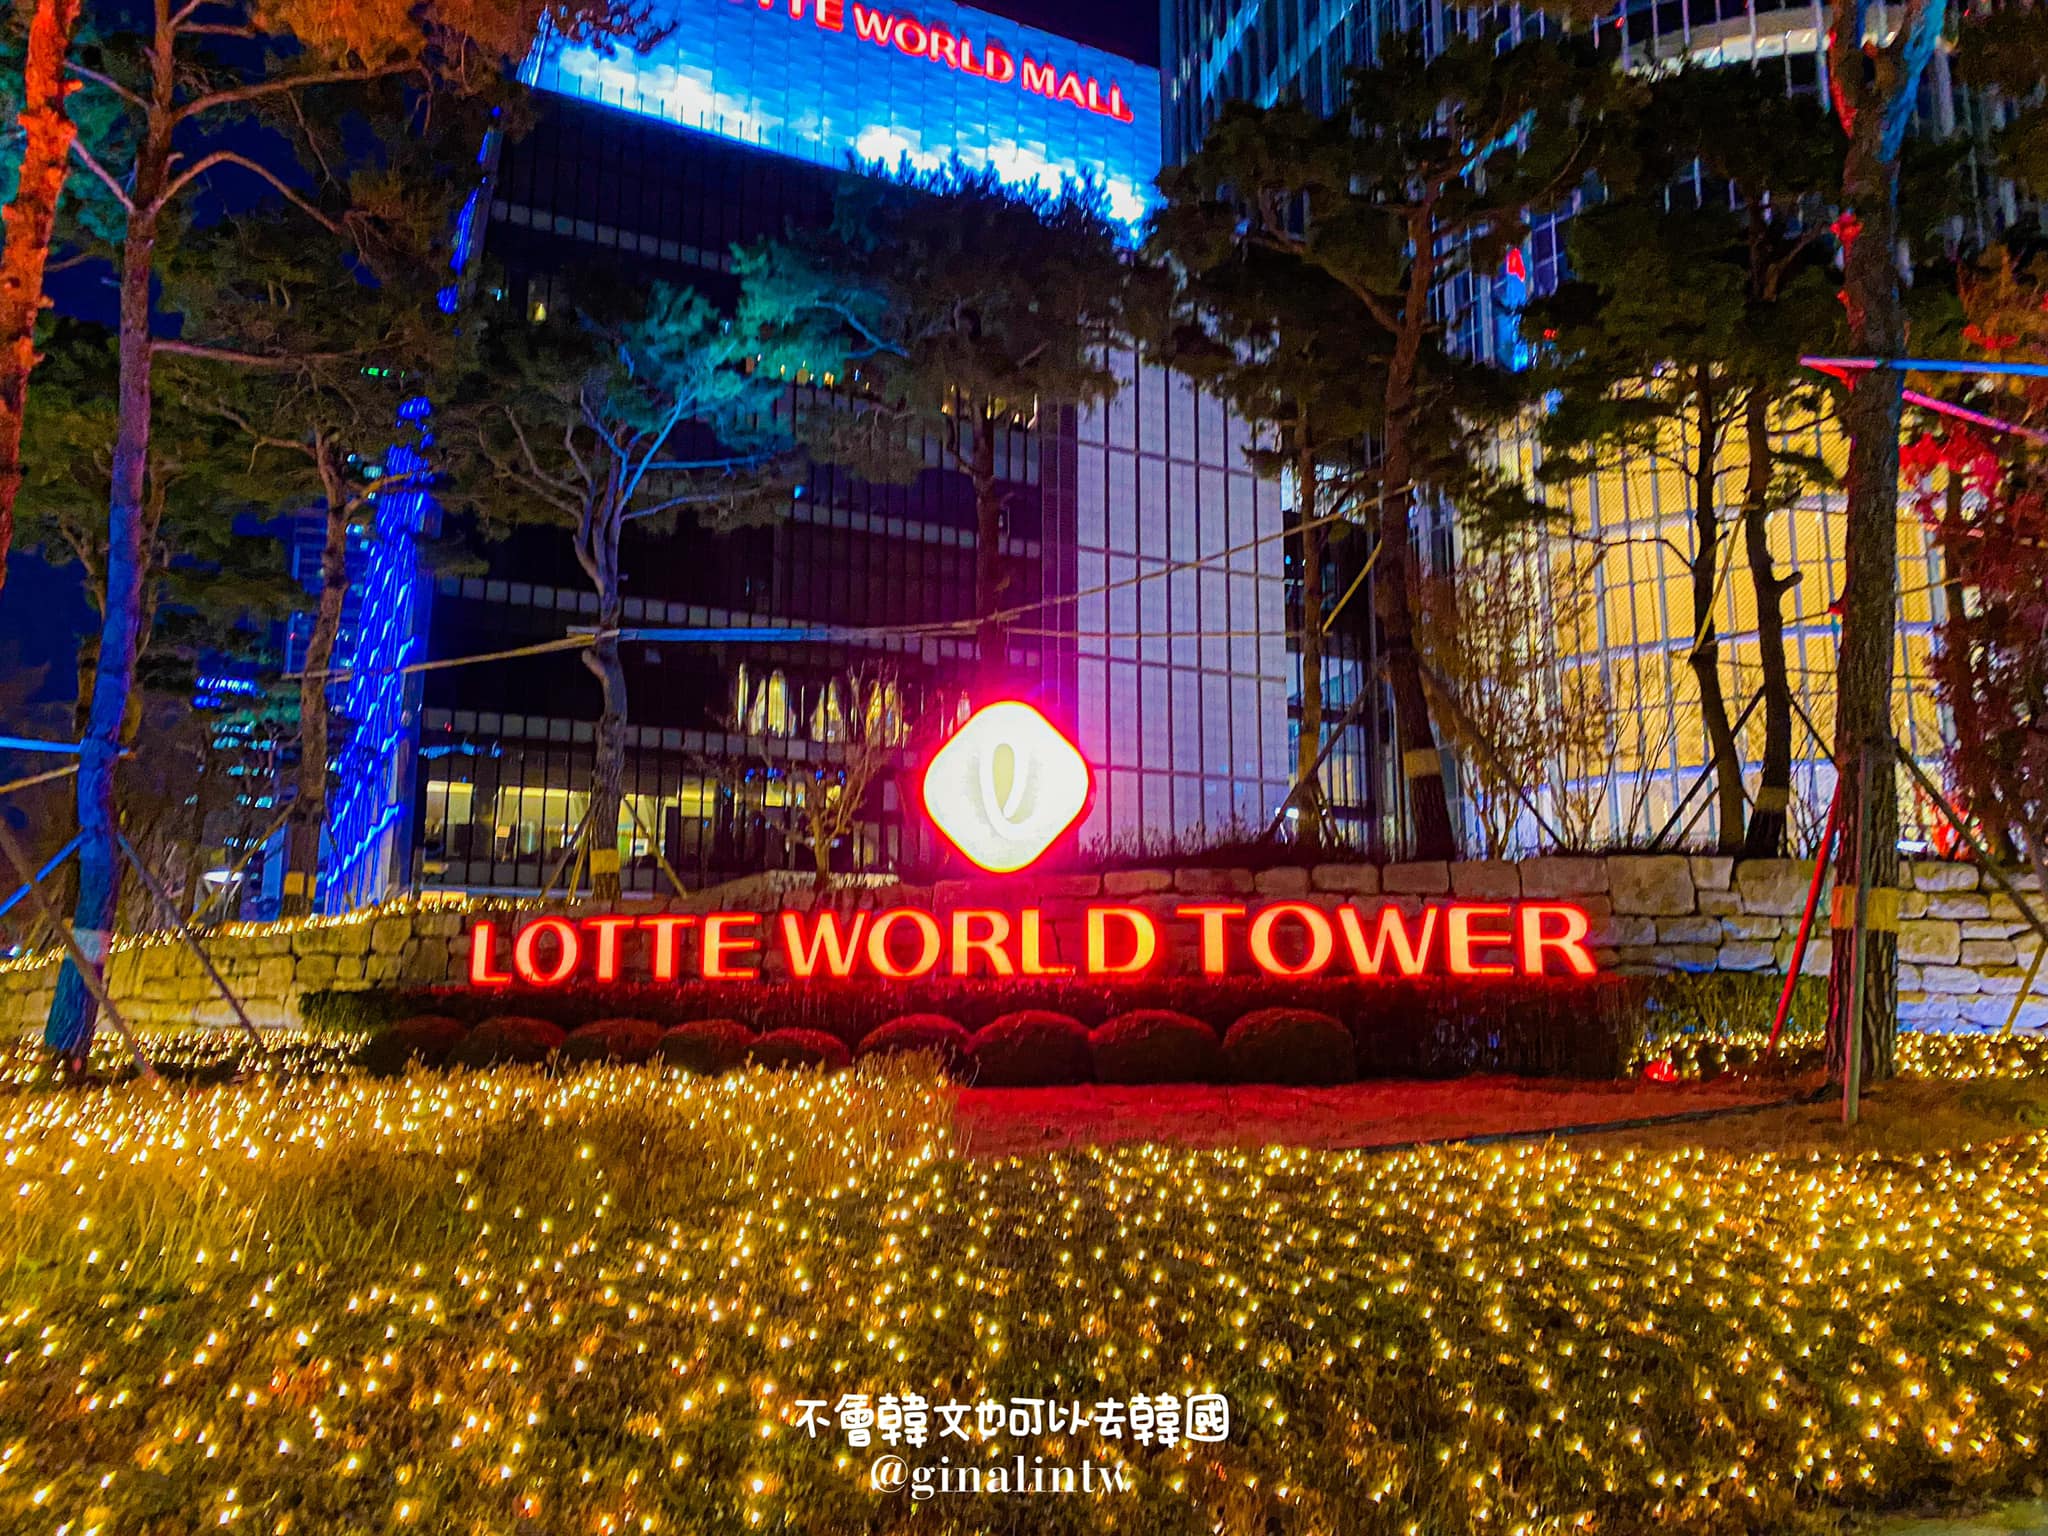 【2022韓國首爾聖誕節】韓國聖誕節去哪裡?盤點首爾聖誕活動百貨、市集活動 @GINA環球旅行生活